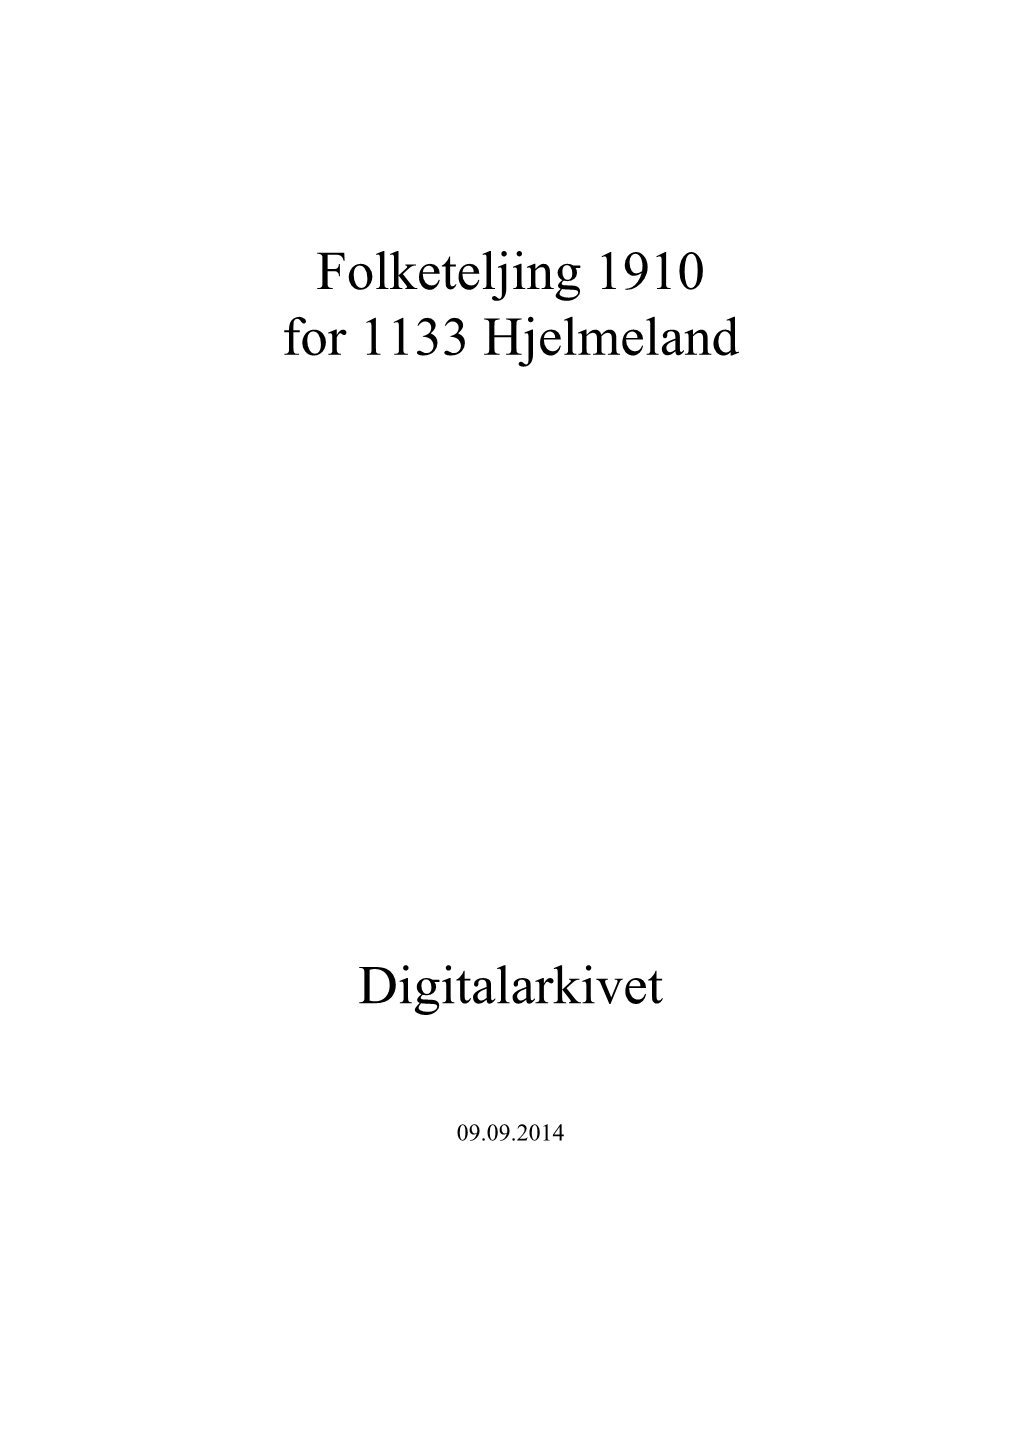 Folketeljing 1910 for 1133 Hjelmeland Digitalarkivet